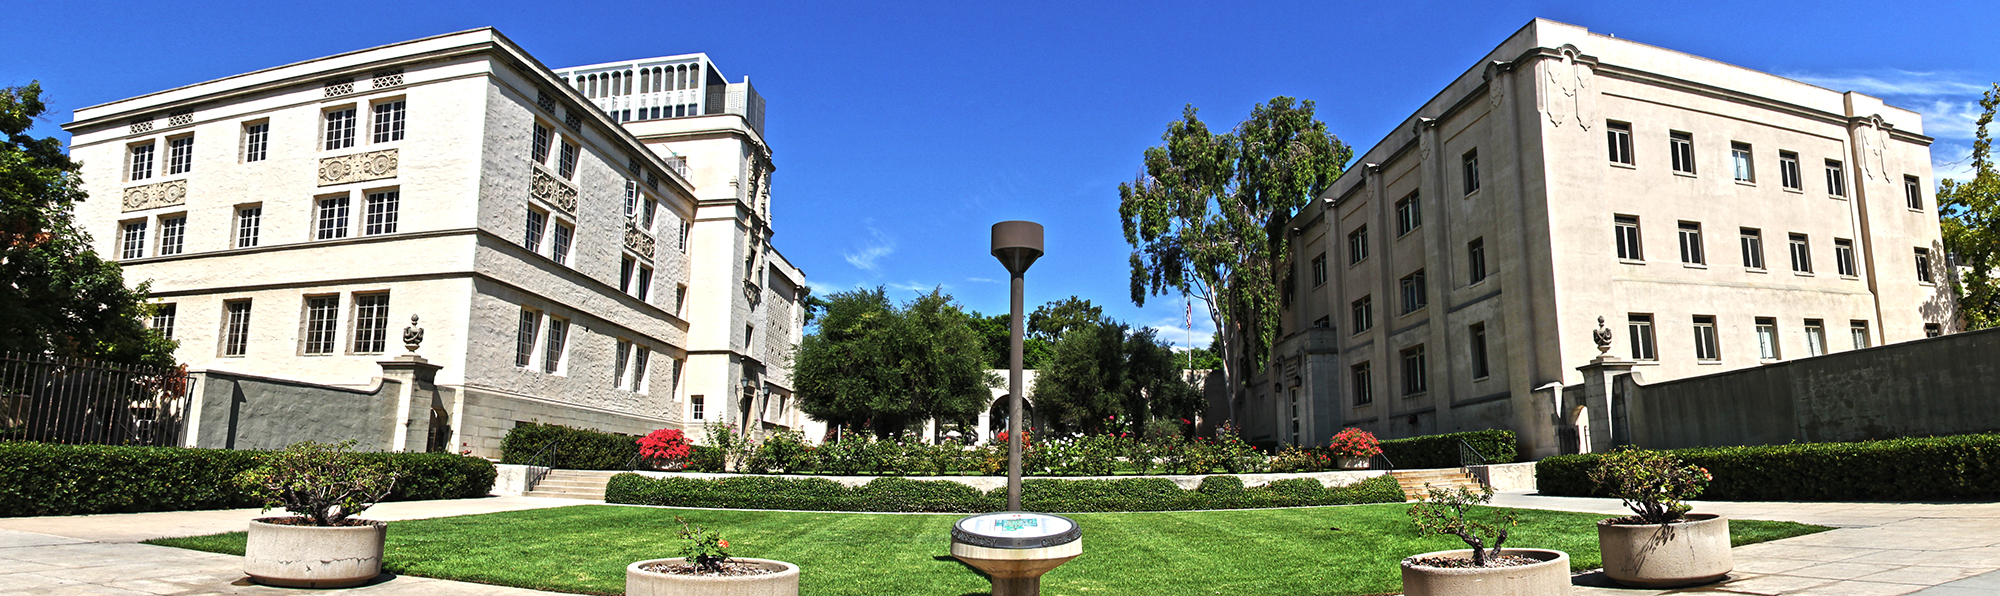 加州理工學院街景